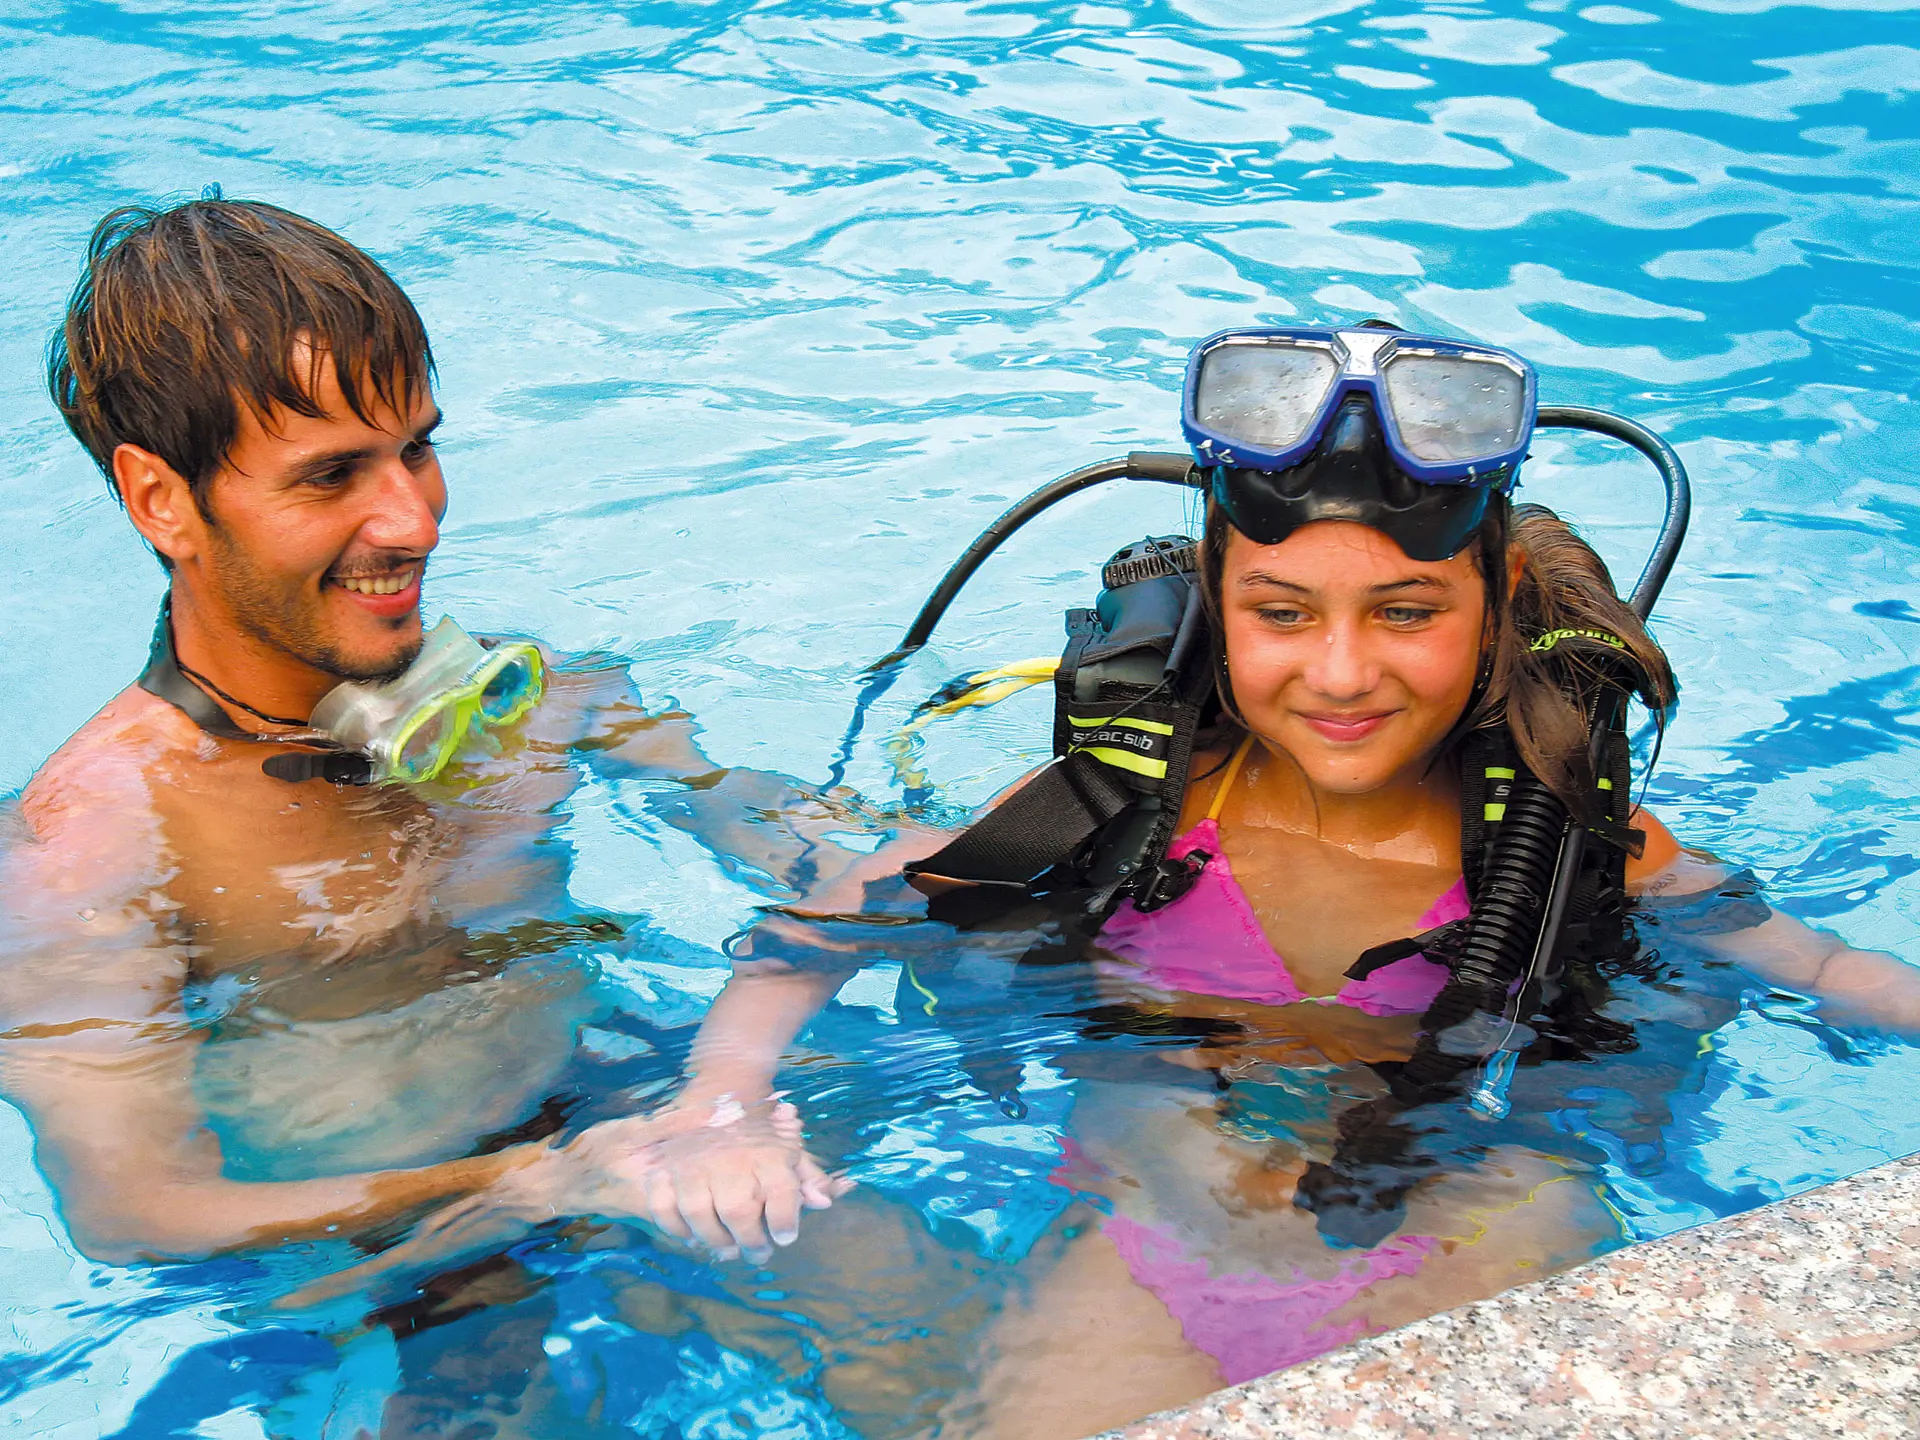 Du har möjlighet att gå en dykkurs på Hotel Club Saraceno